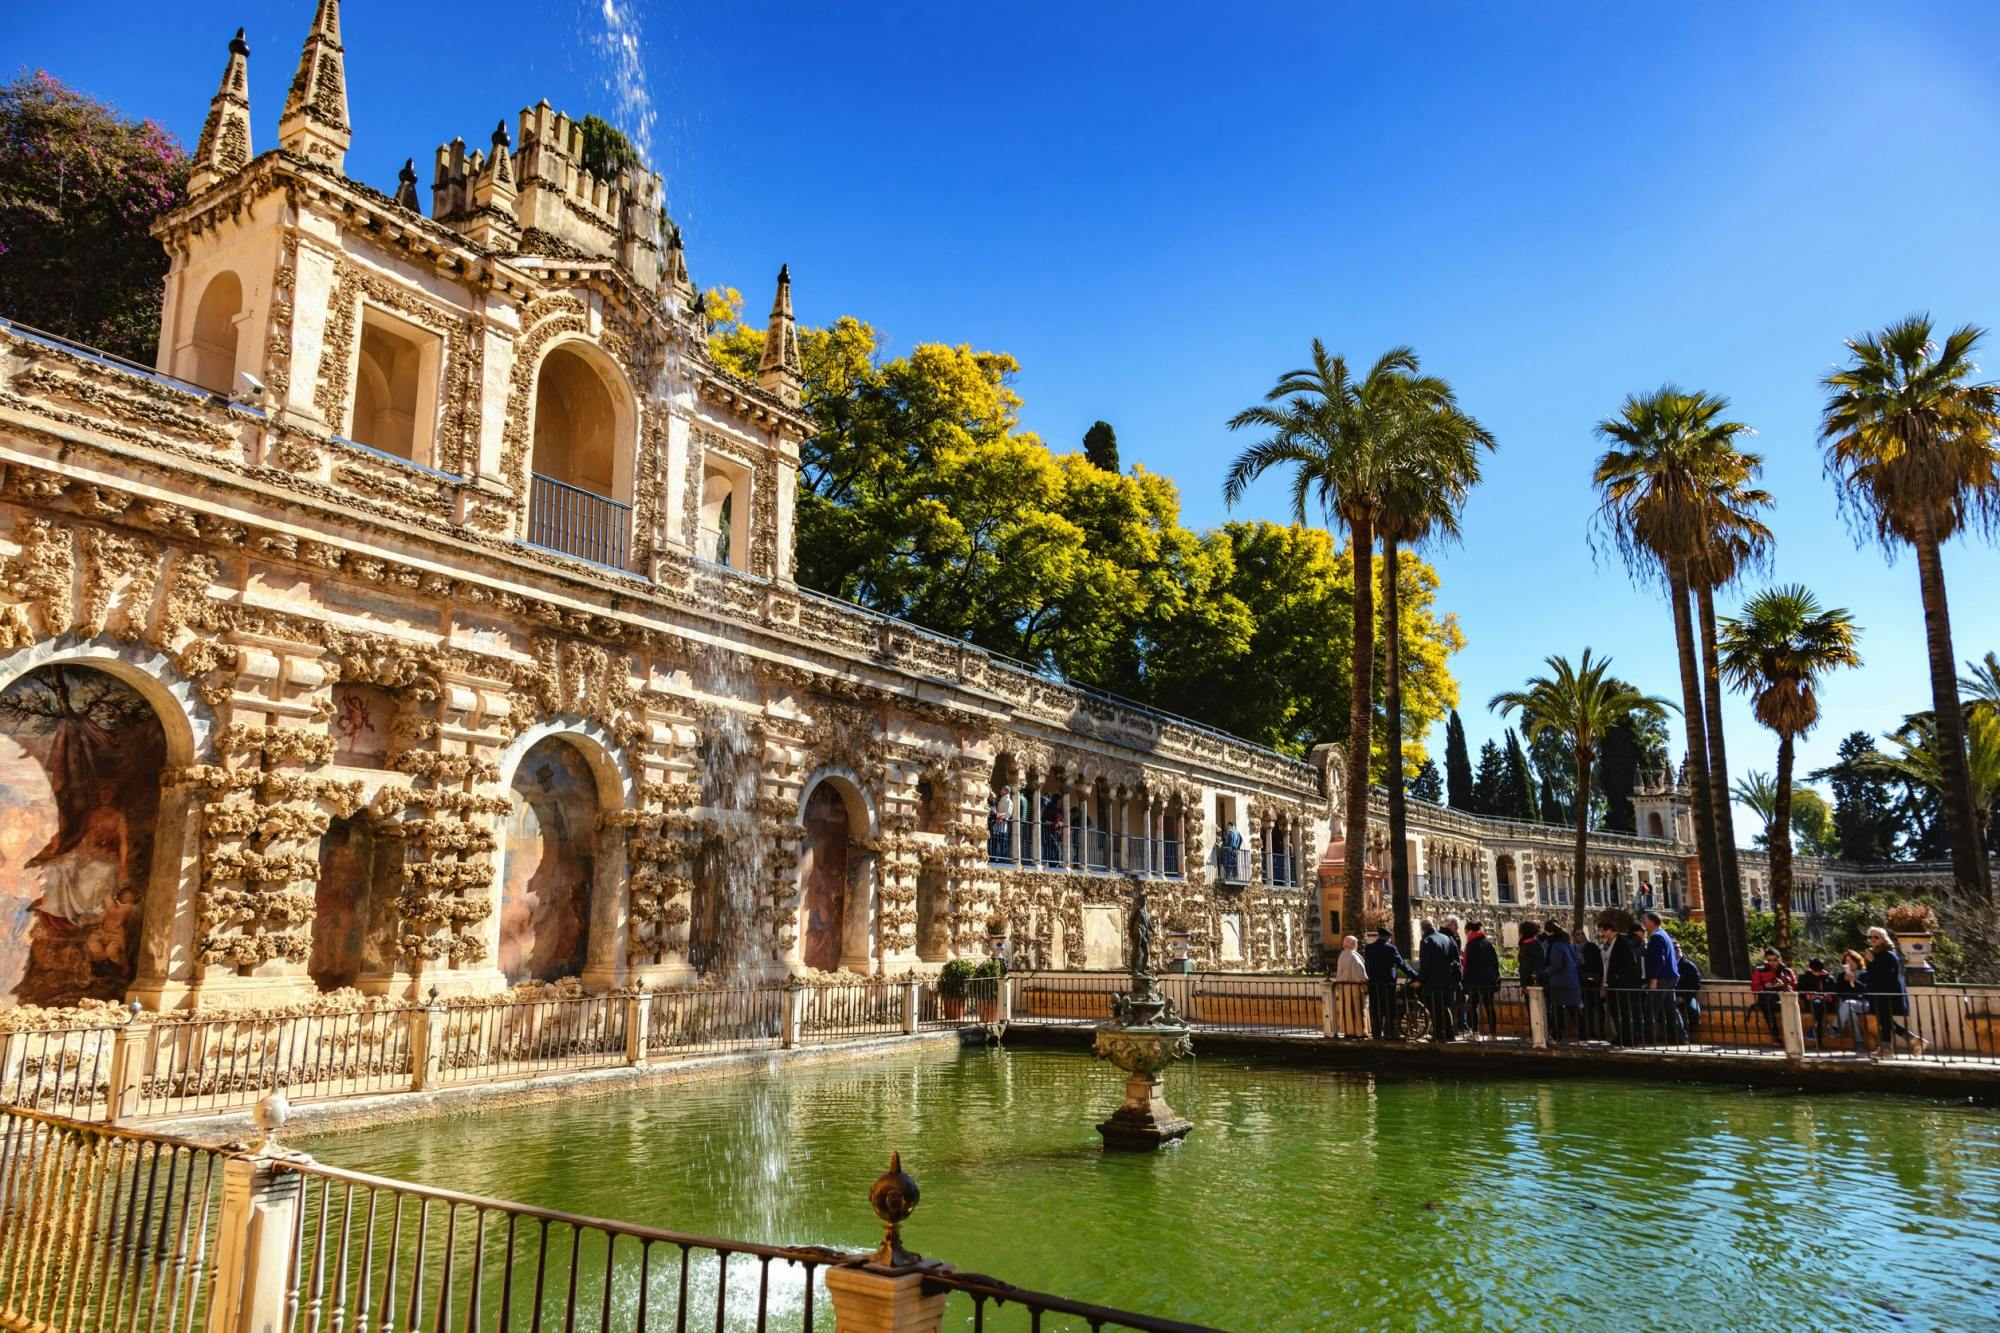 Entrada electrónica a los Reales Alcázares de Sevilla con audioguía